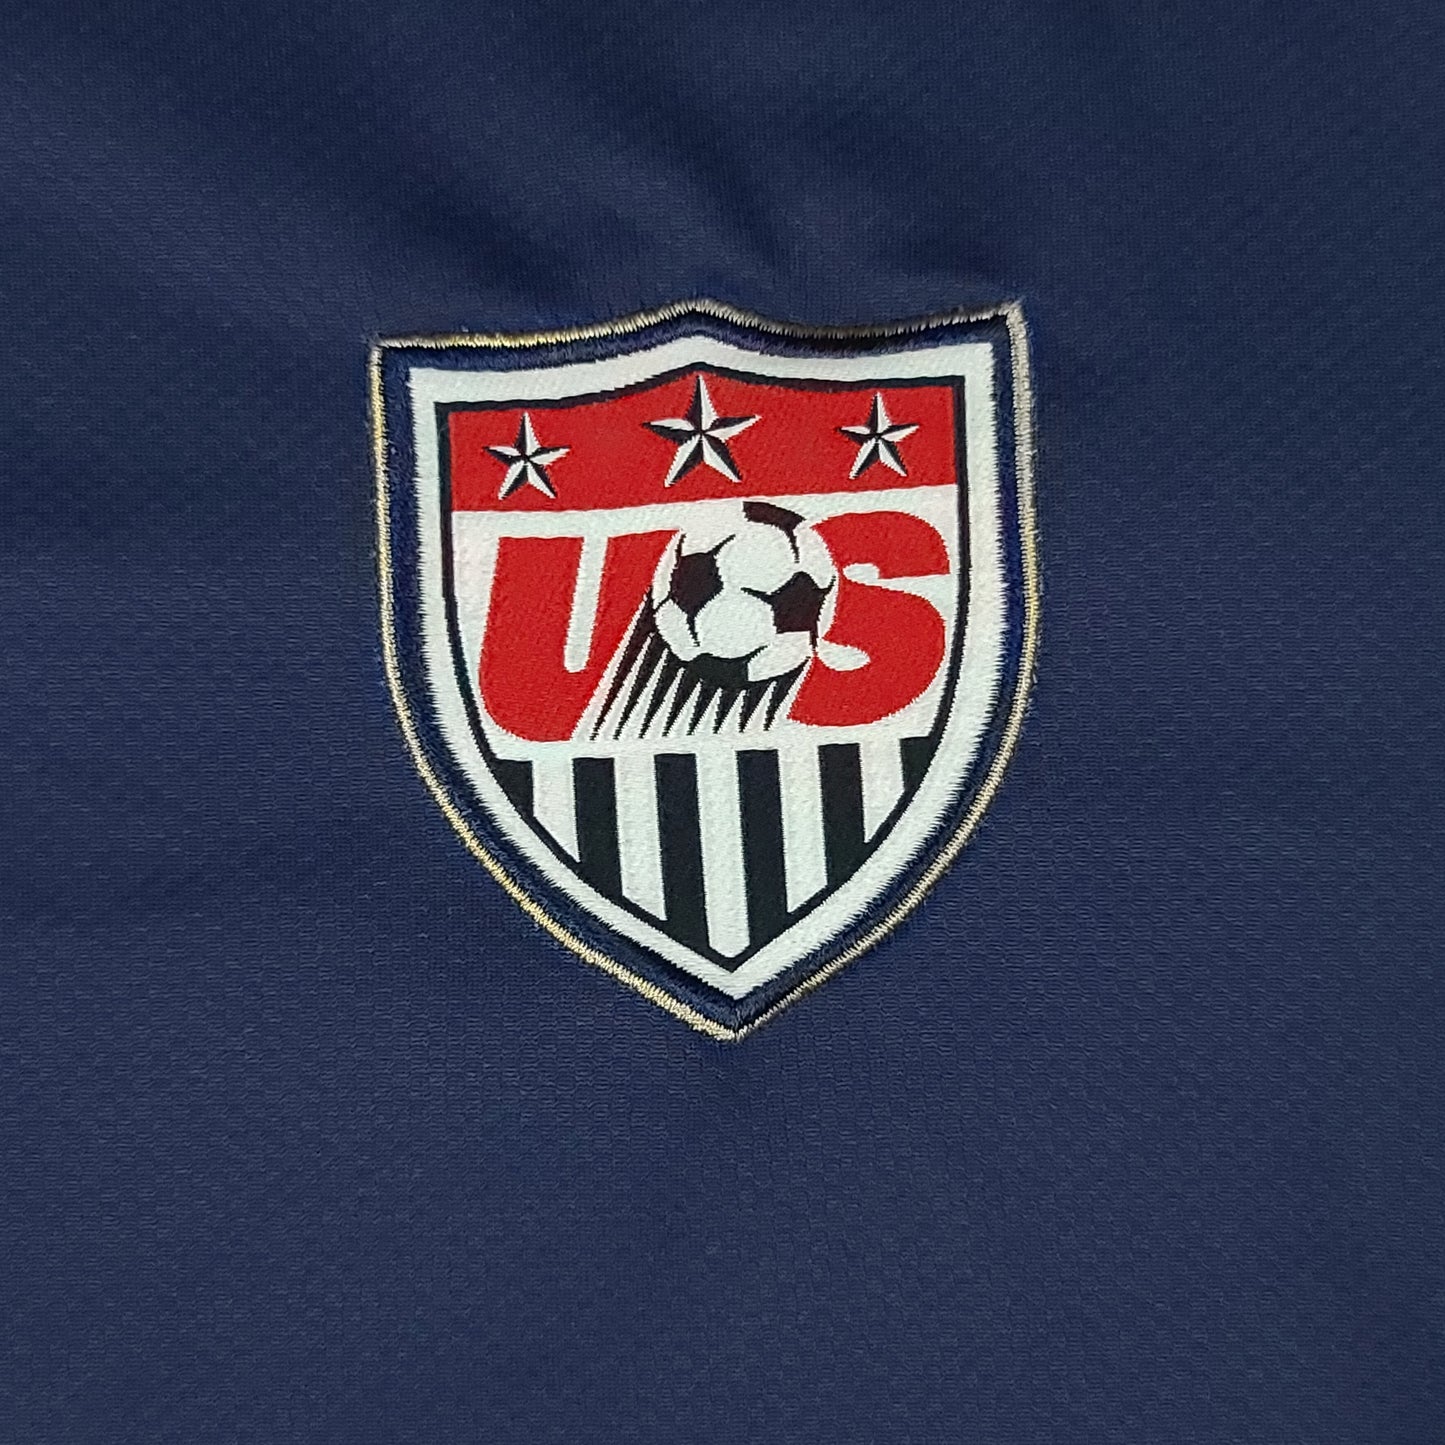 Team USA Dri-Fit Soccer Jersey